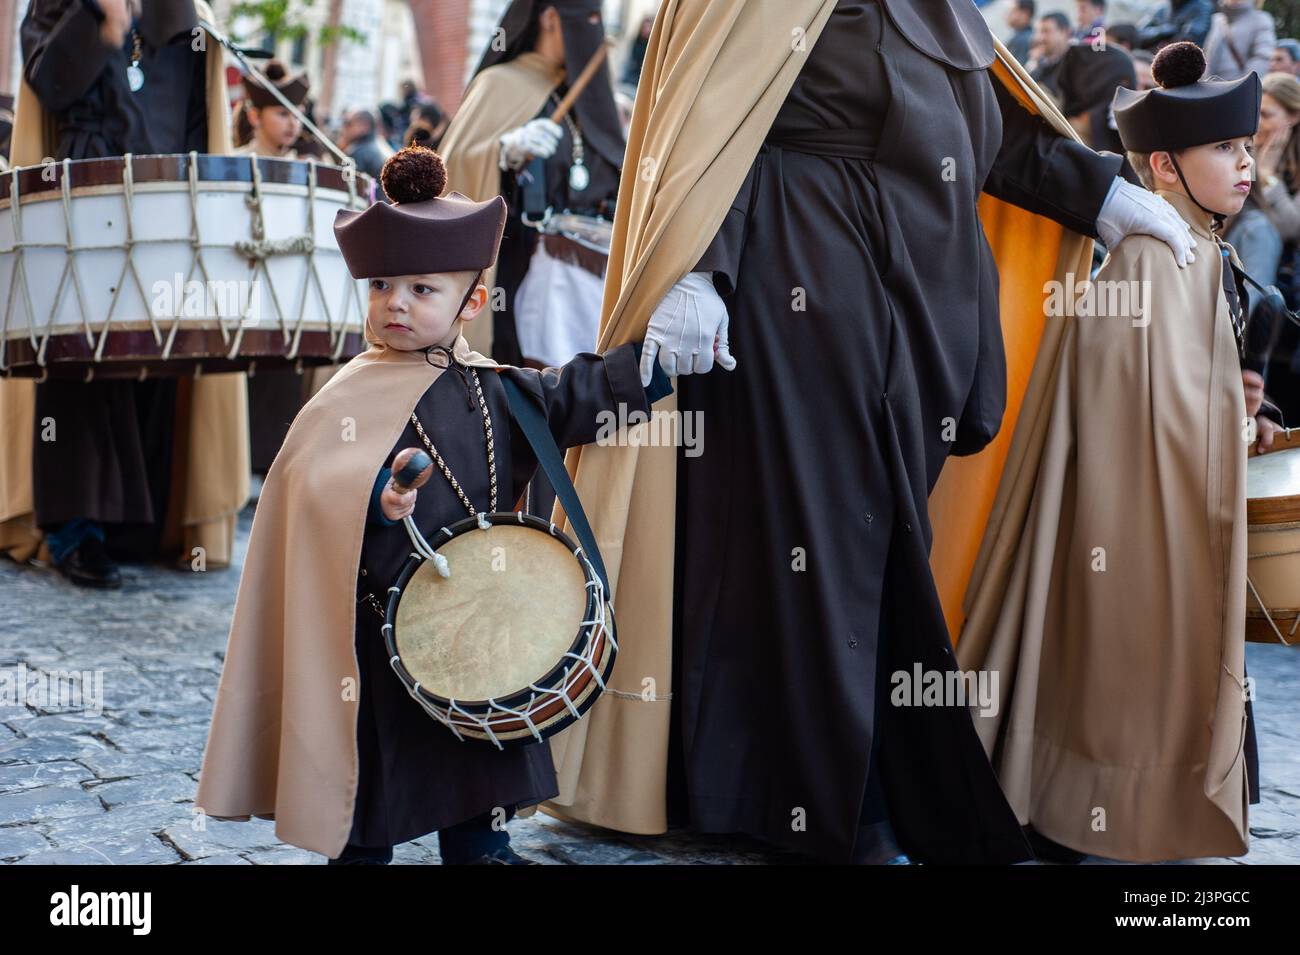 Se ve a un niño pequeño sosteniendo un tambor. En España, la Semana Santa  se llama 'Semana Santa' y se celebra con una incomparable belleza y emoción.  Viene con procesiones religiosas alrededor